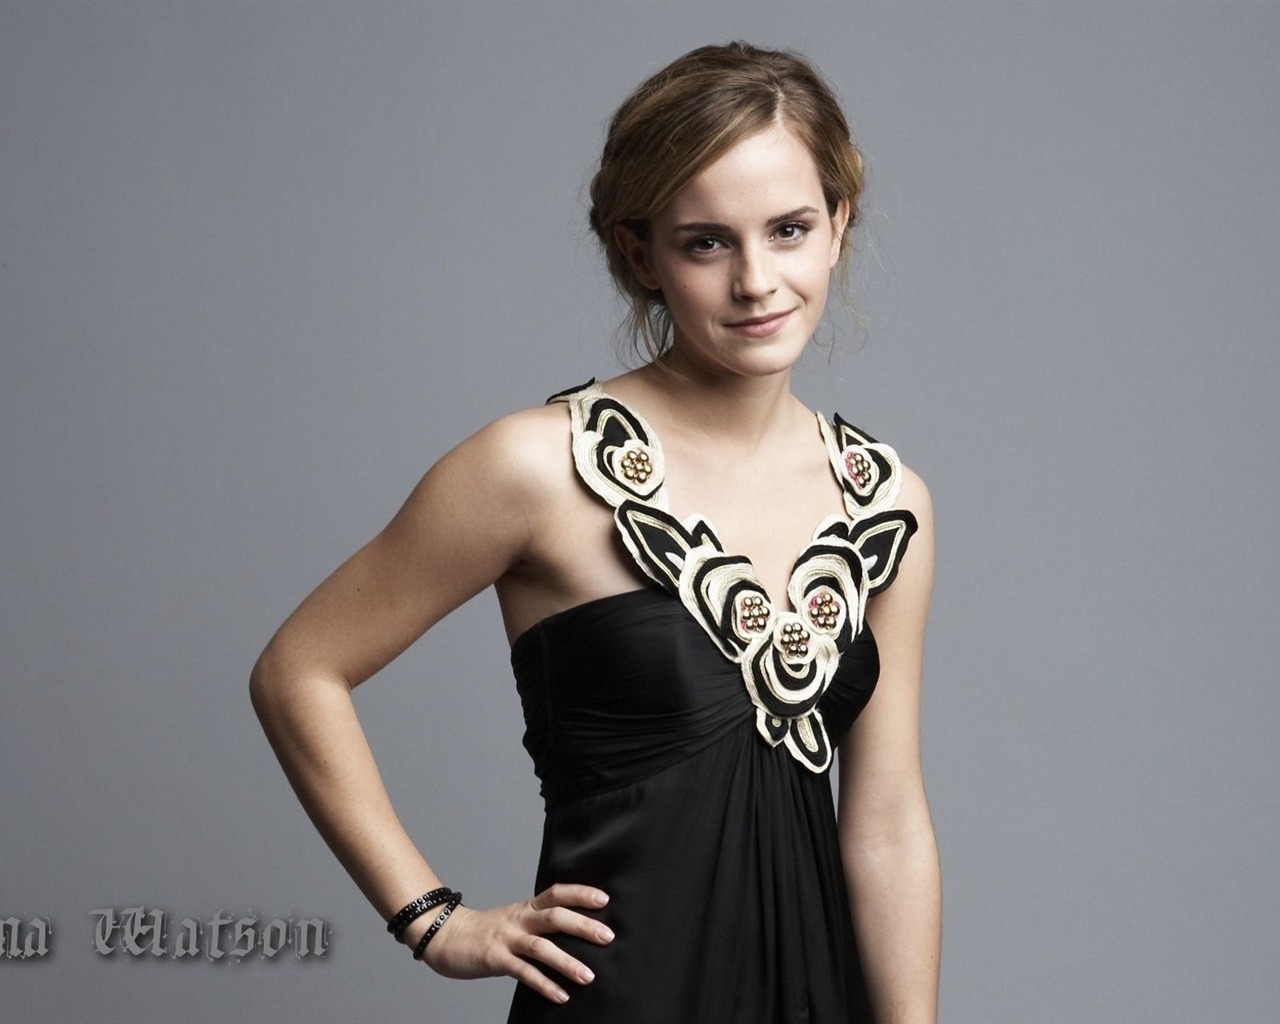 Emma Watson 艾玛·沃特森 美女壁纸23 - 1280x1024